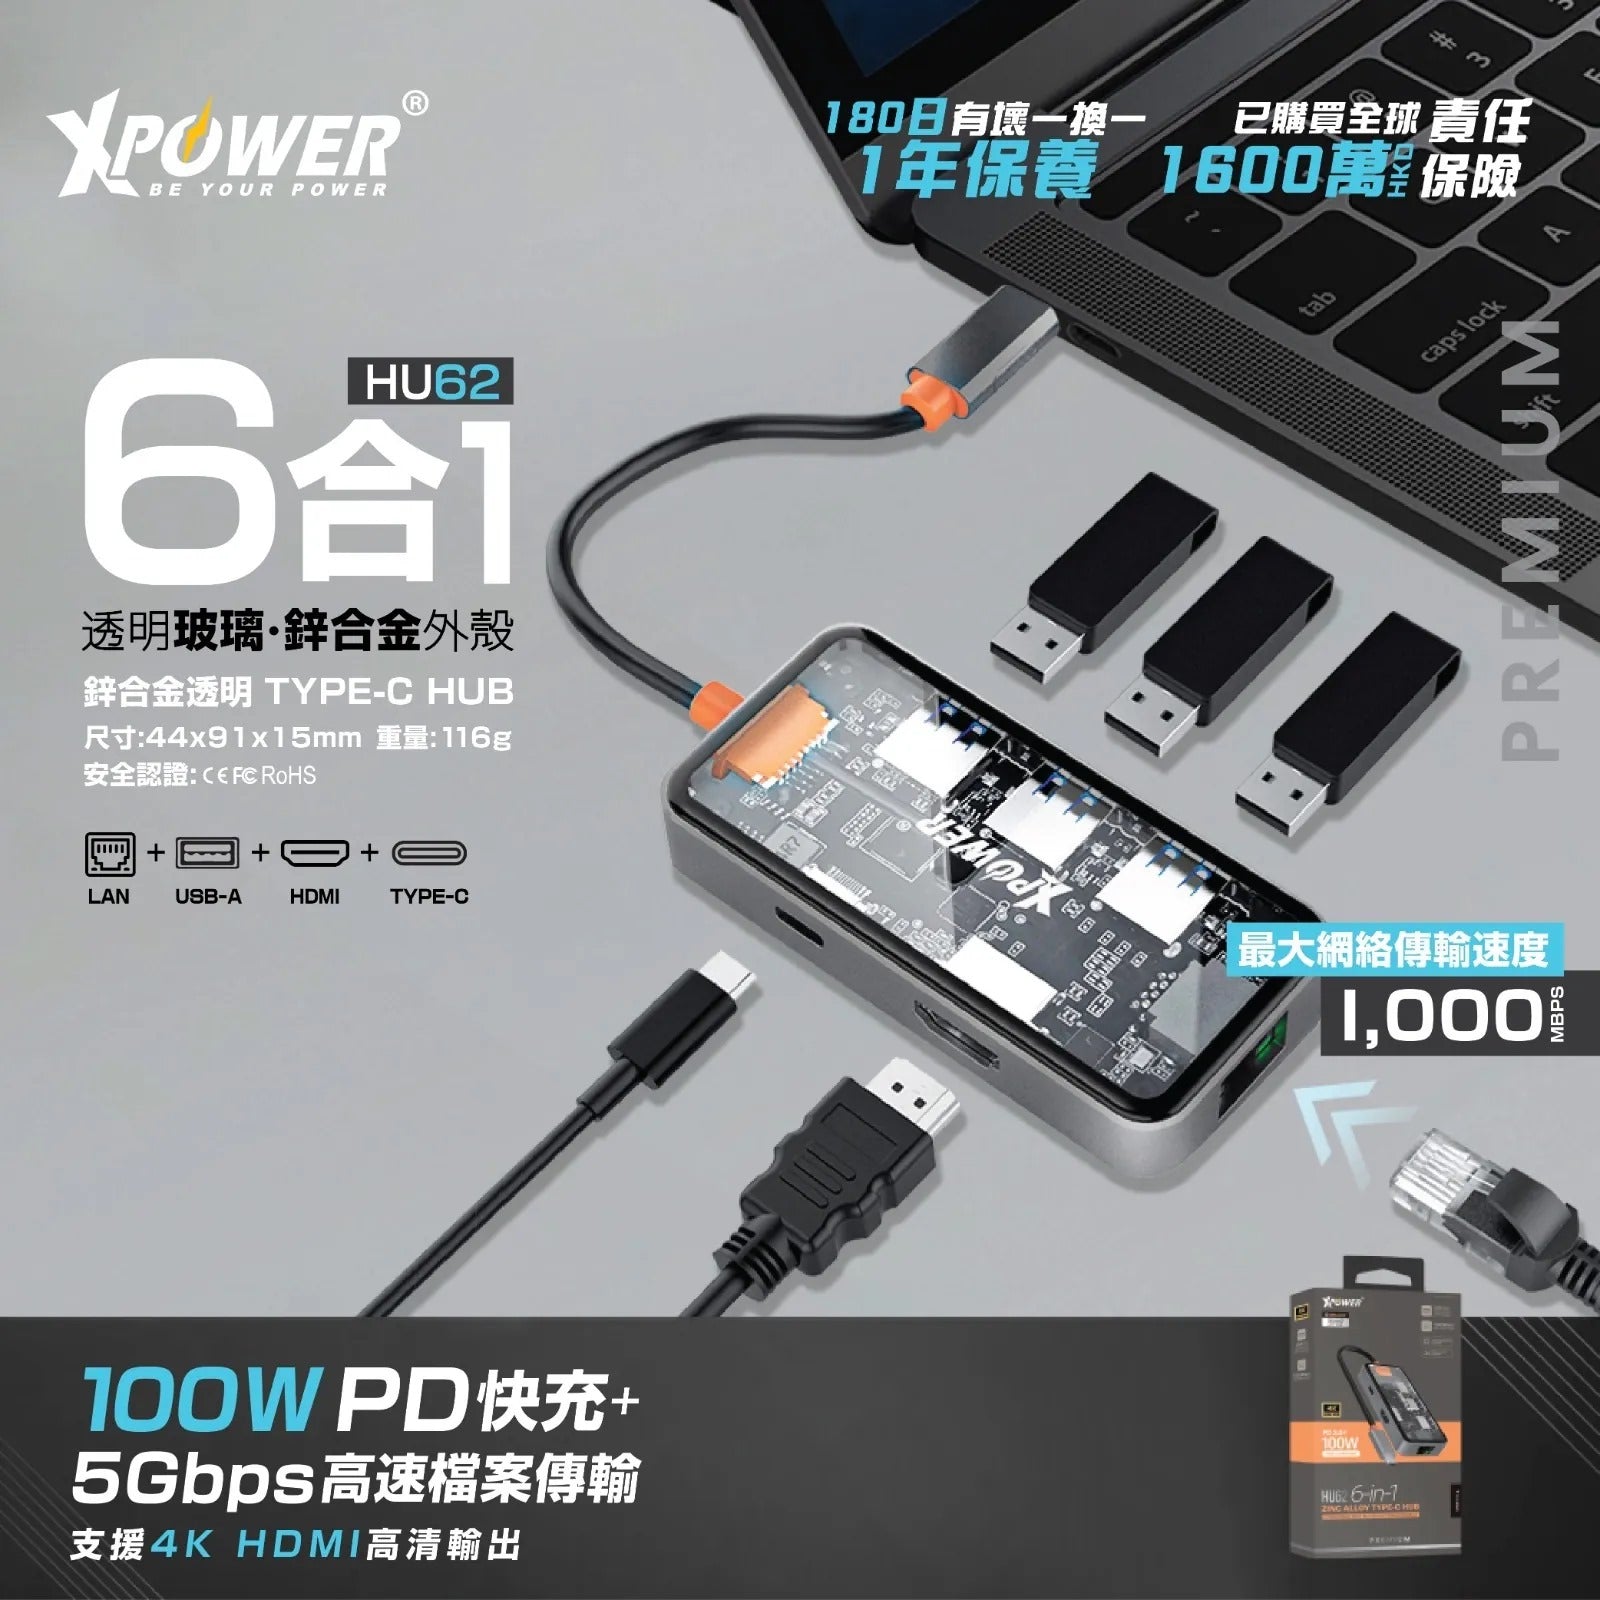 XPower HU62 6 In 1 100W PD Type-C Hub - Grey